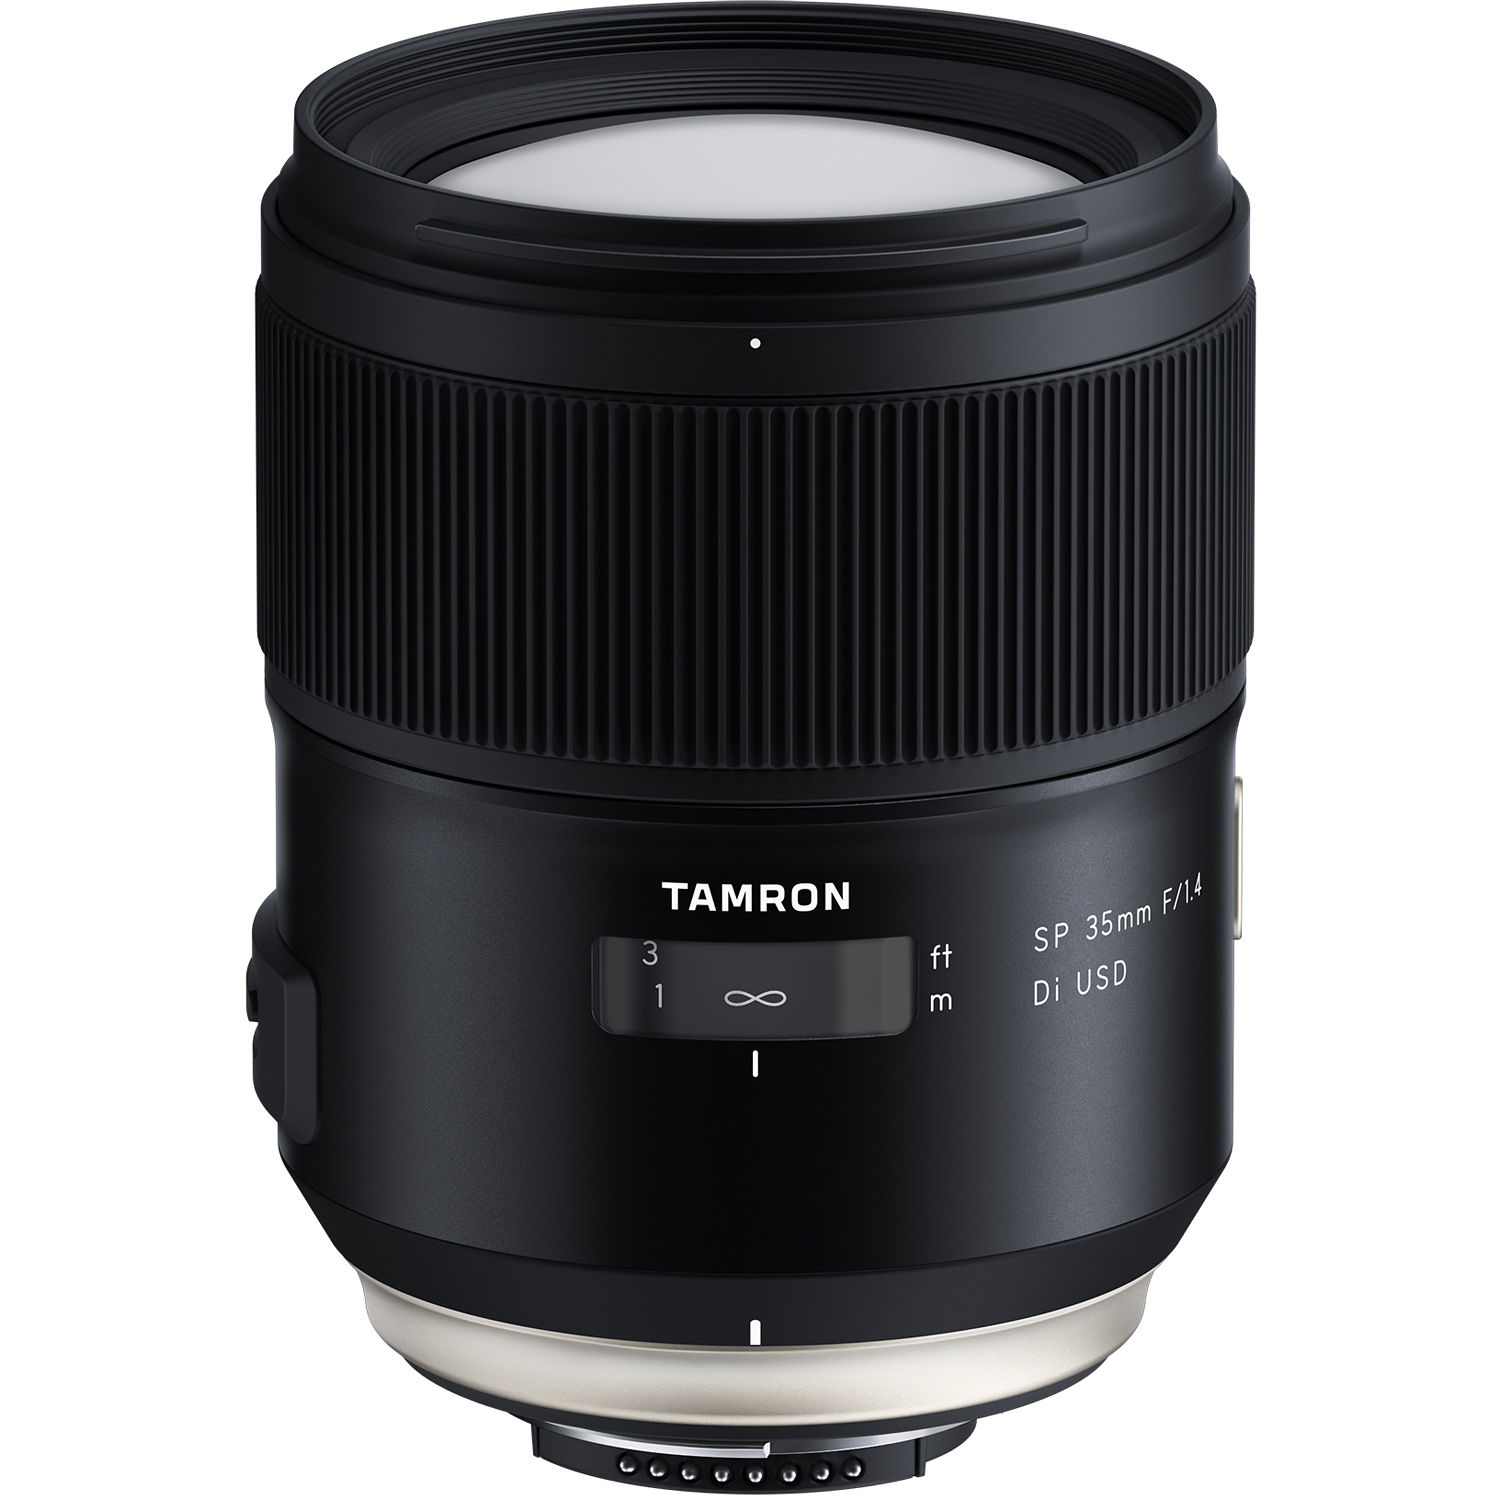 TVignette pour Tamron SP 35mm f/1.4 Di USD